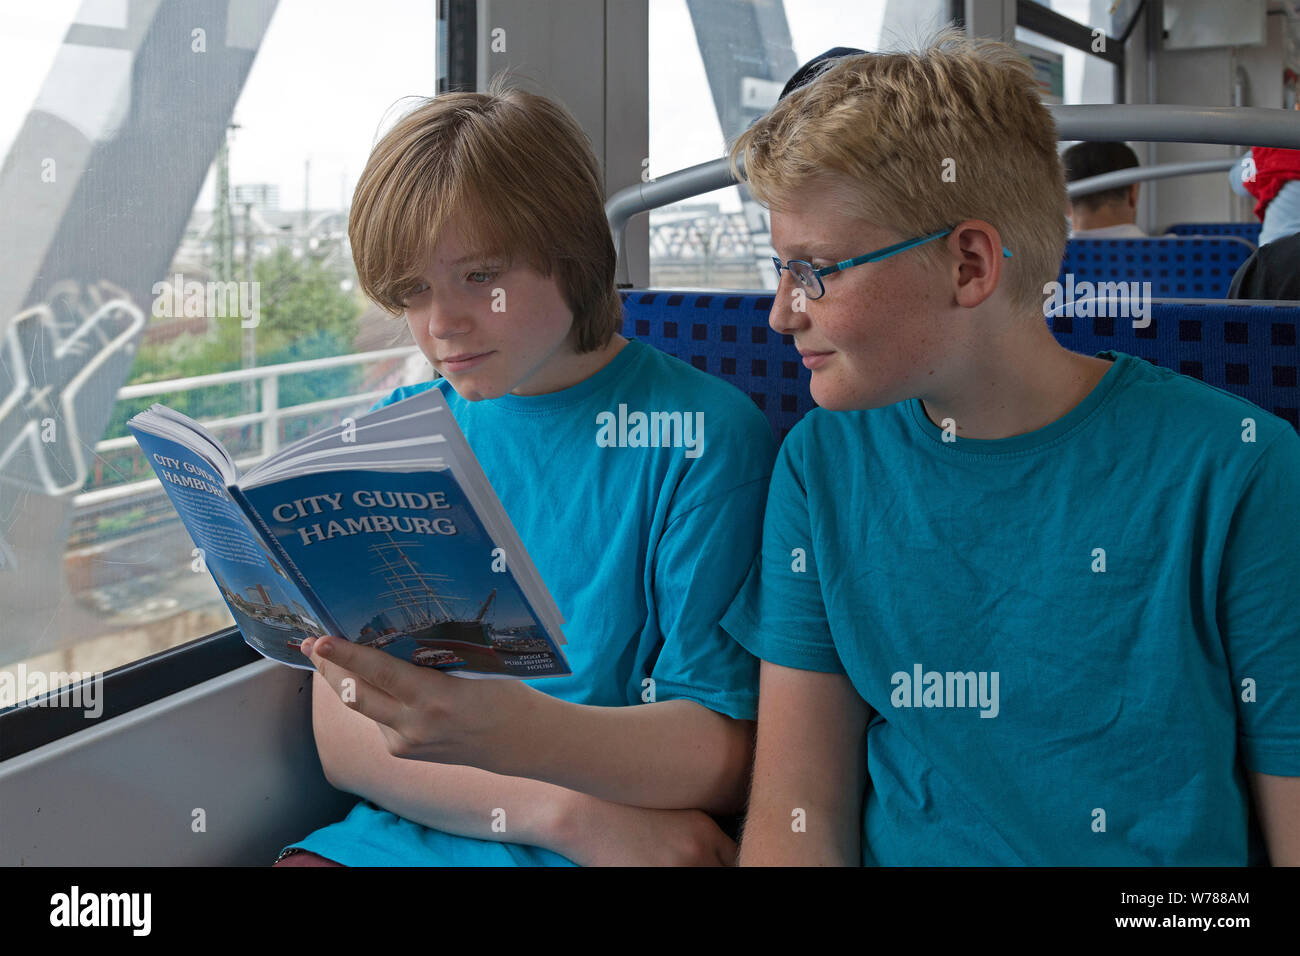 Gli adolescenti durante lo studio della lingua corsa nello studio della loro guida della città su un treno suburbano, Amburgo, Germania Foto Stock